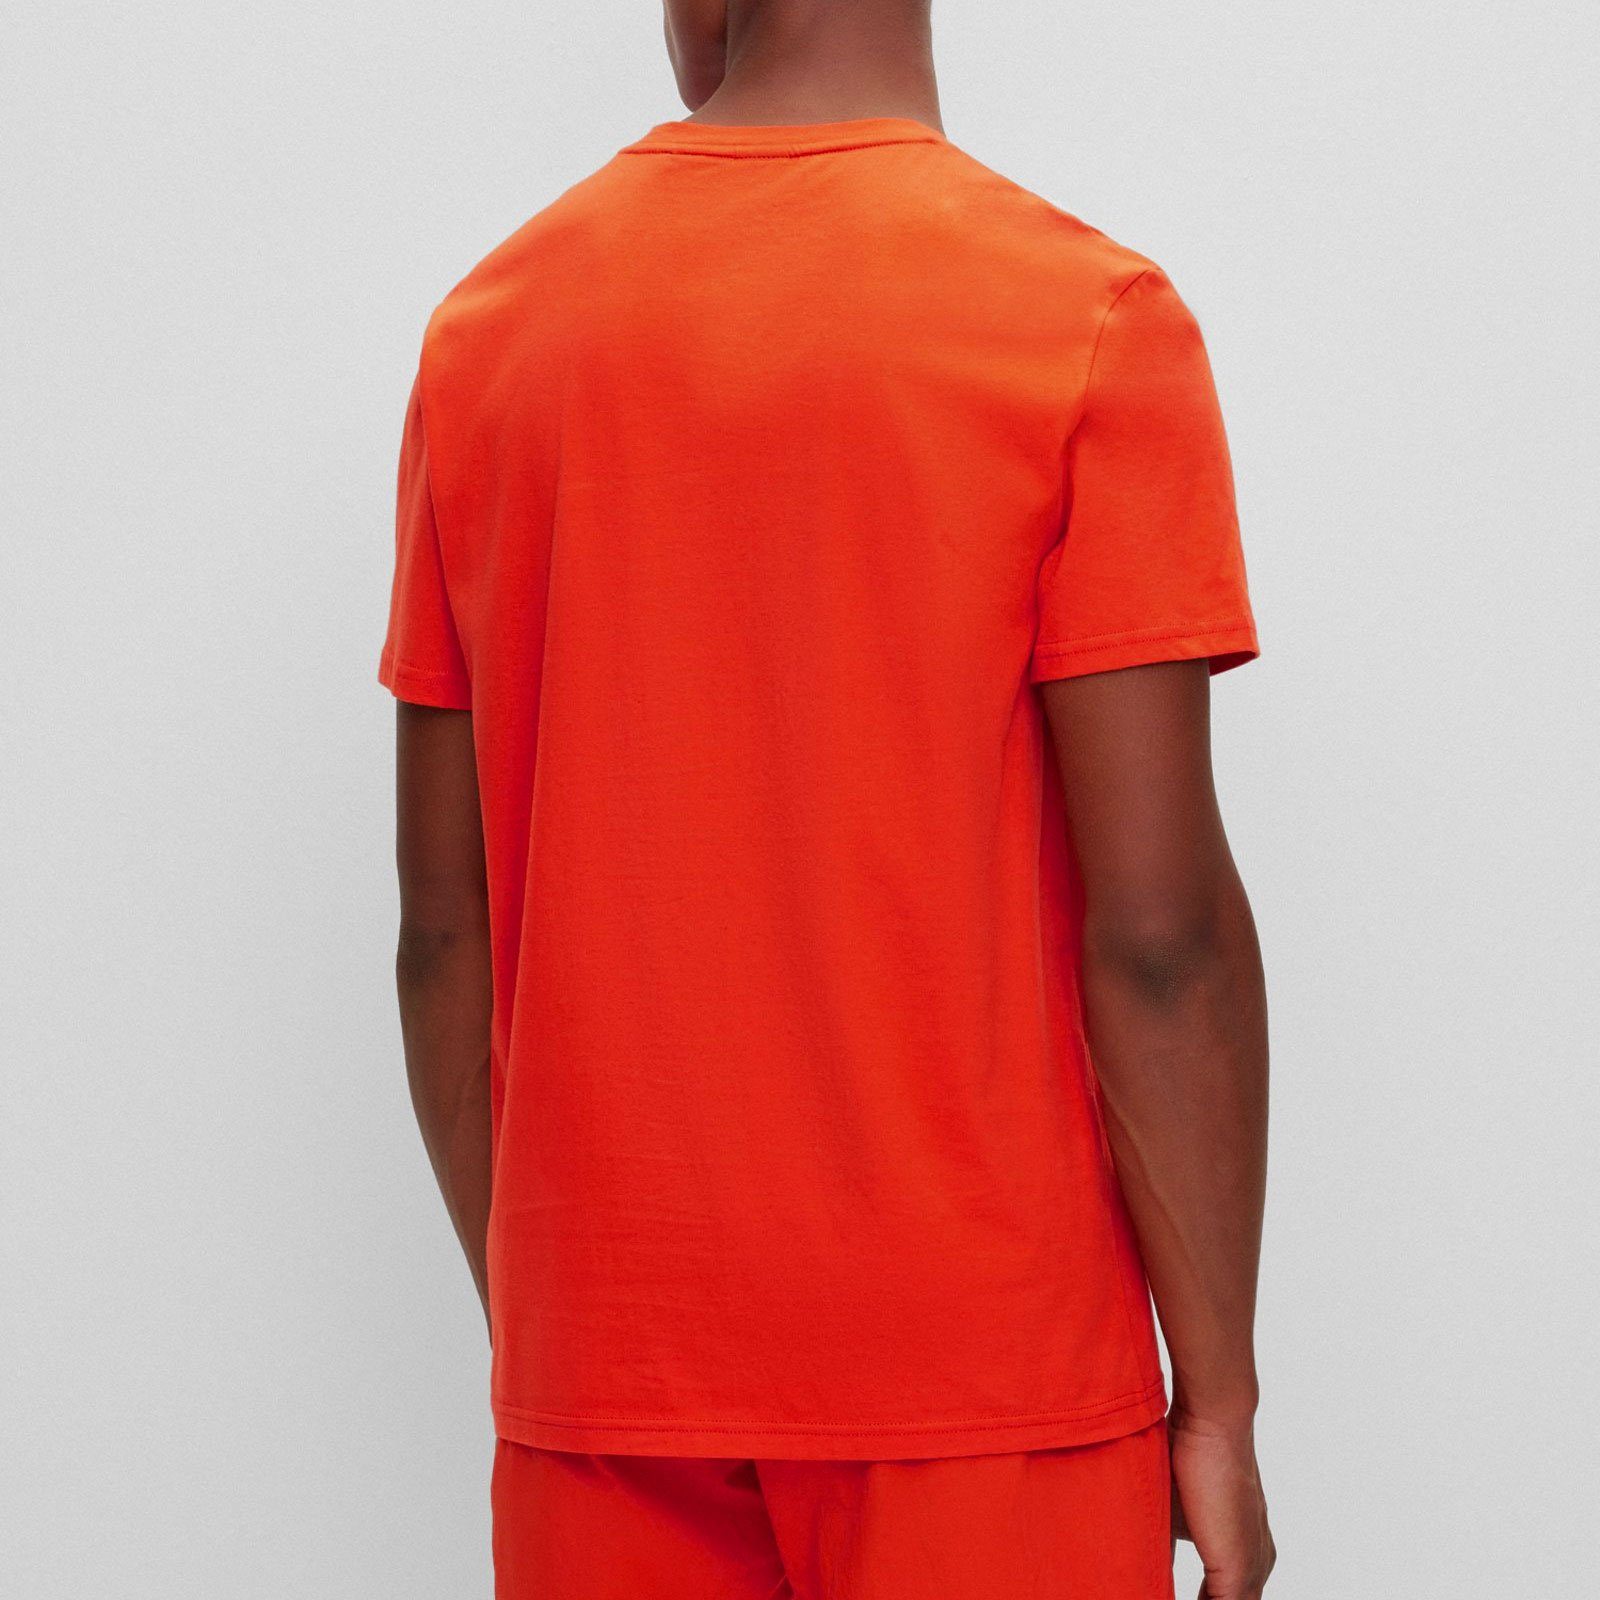 T-Shirt Markenprint orange auf BOSS großem bright 821 RN Brust der mit T-Shirt